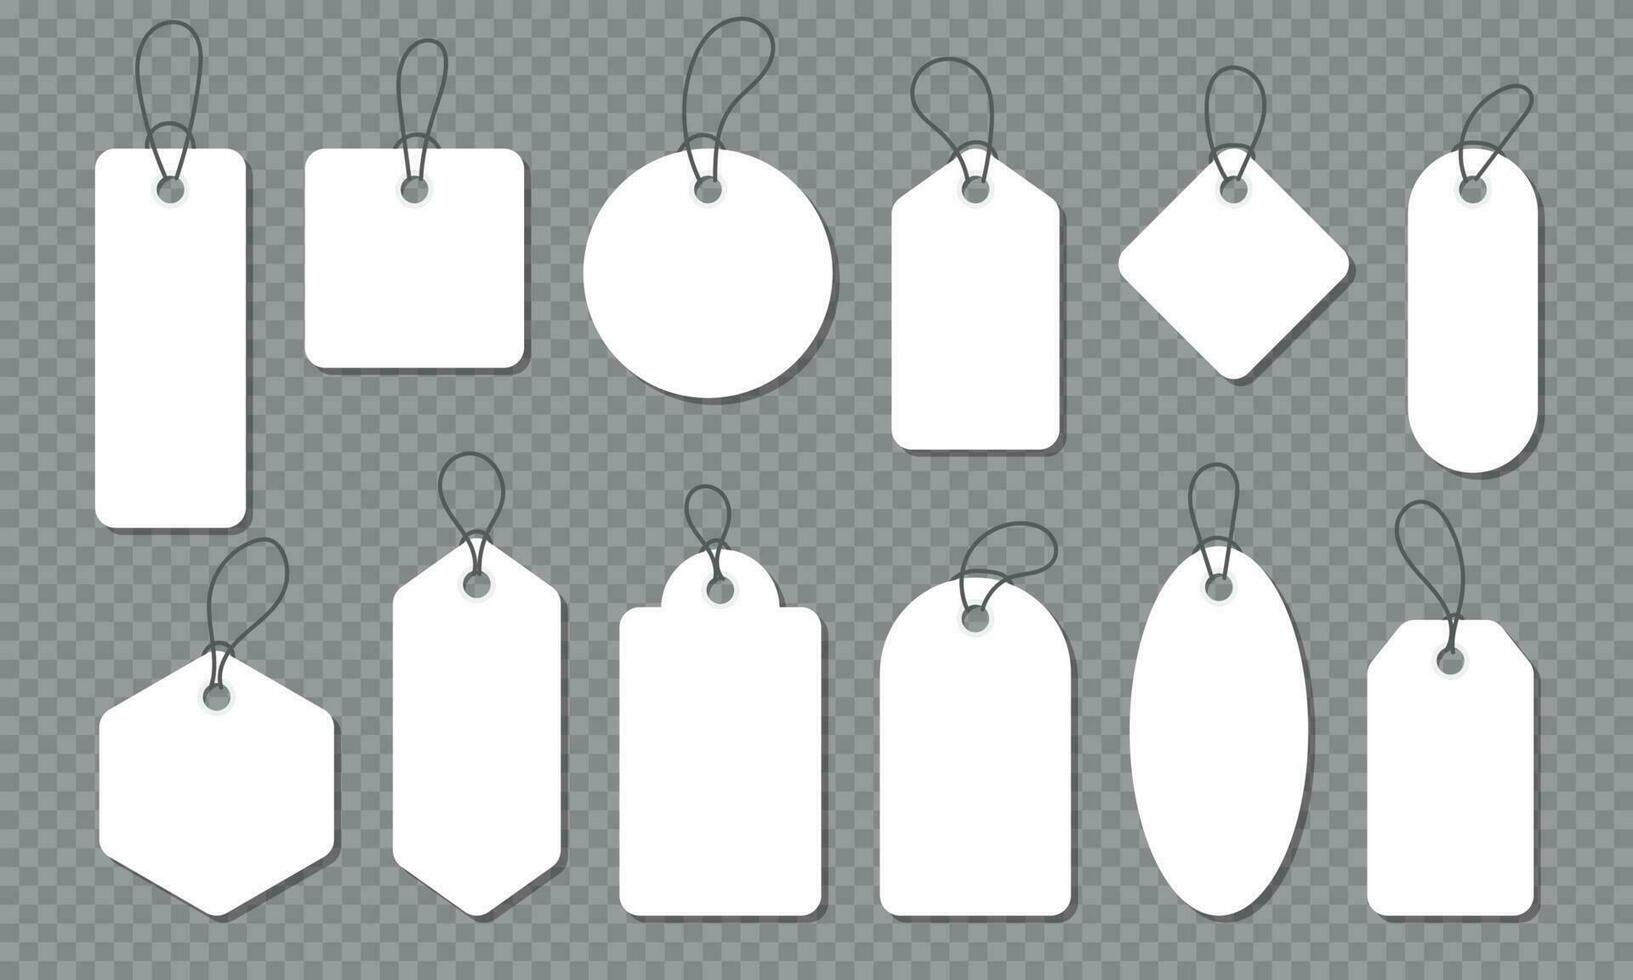 blanco wit papier prijs tags of geschenk tags in verschillend vormen. prijs label verzameling. papier etiketten set. reeks van uitverkoop tags en etiketten. vector illustratie